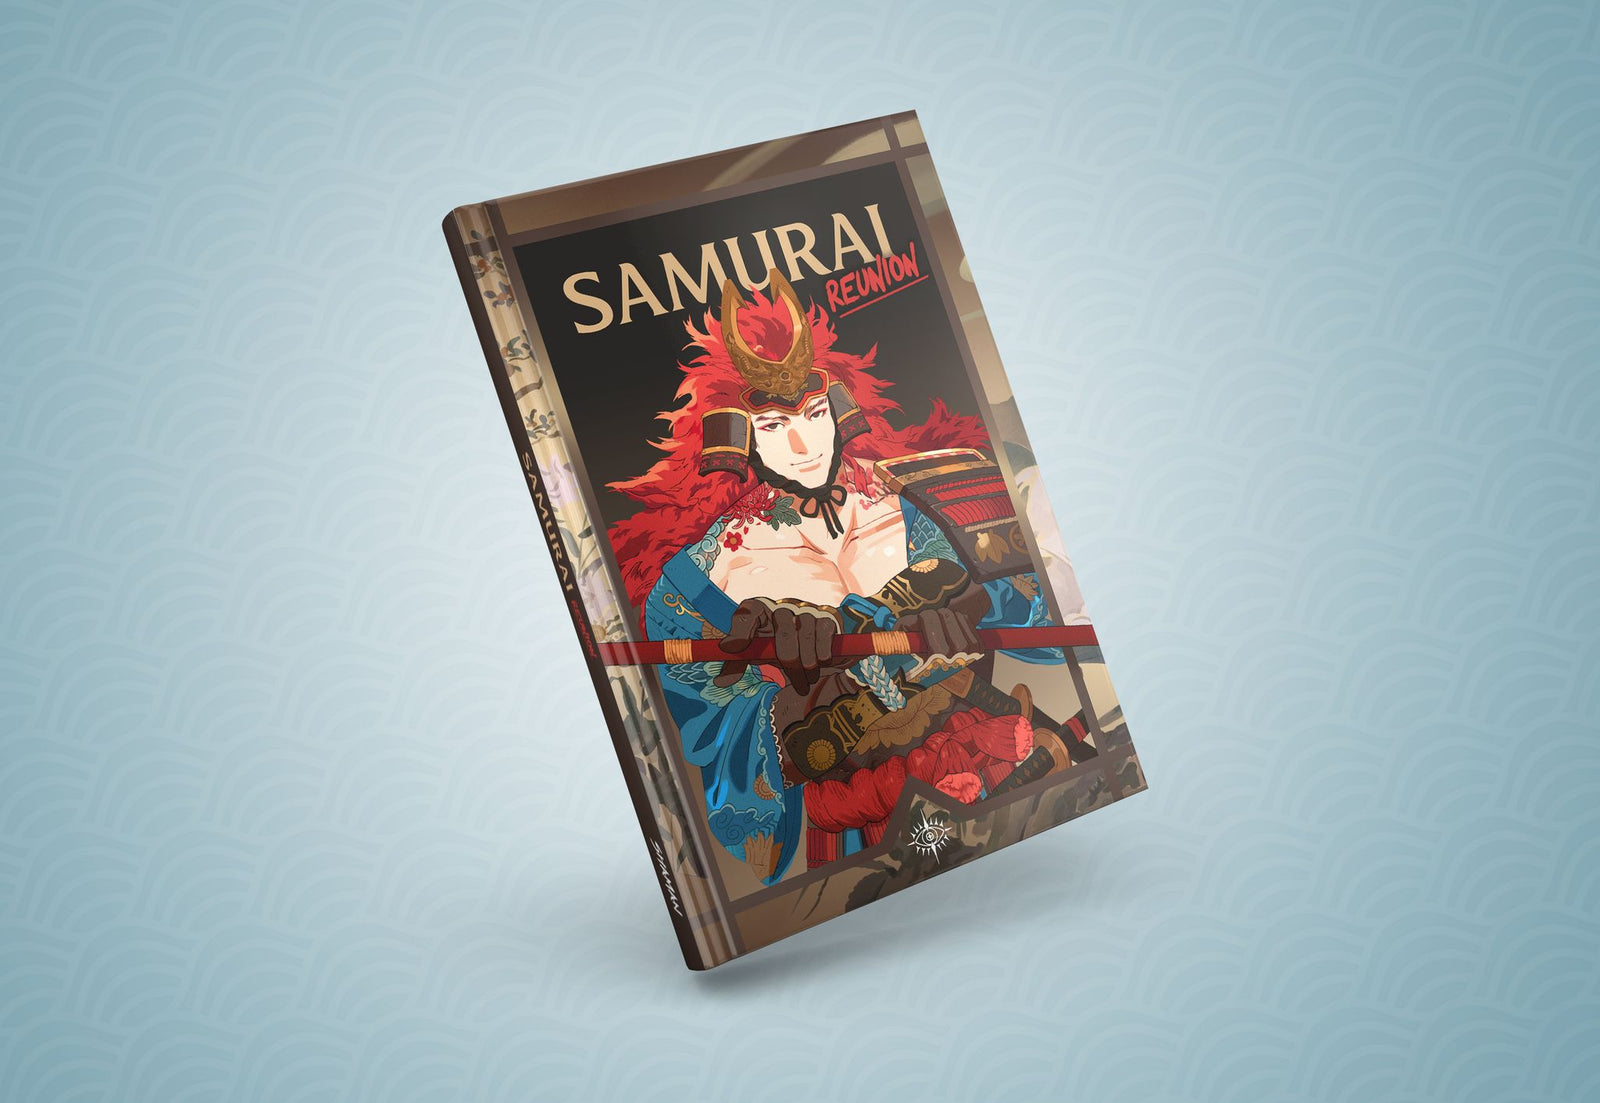 Samurai Reunion Artbook by various